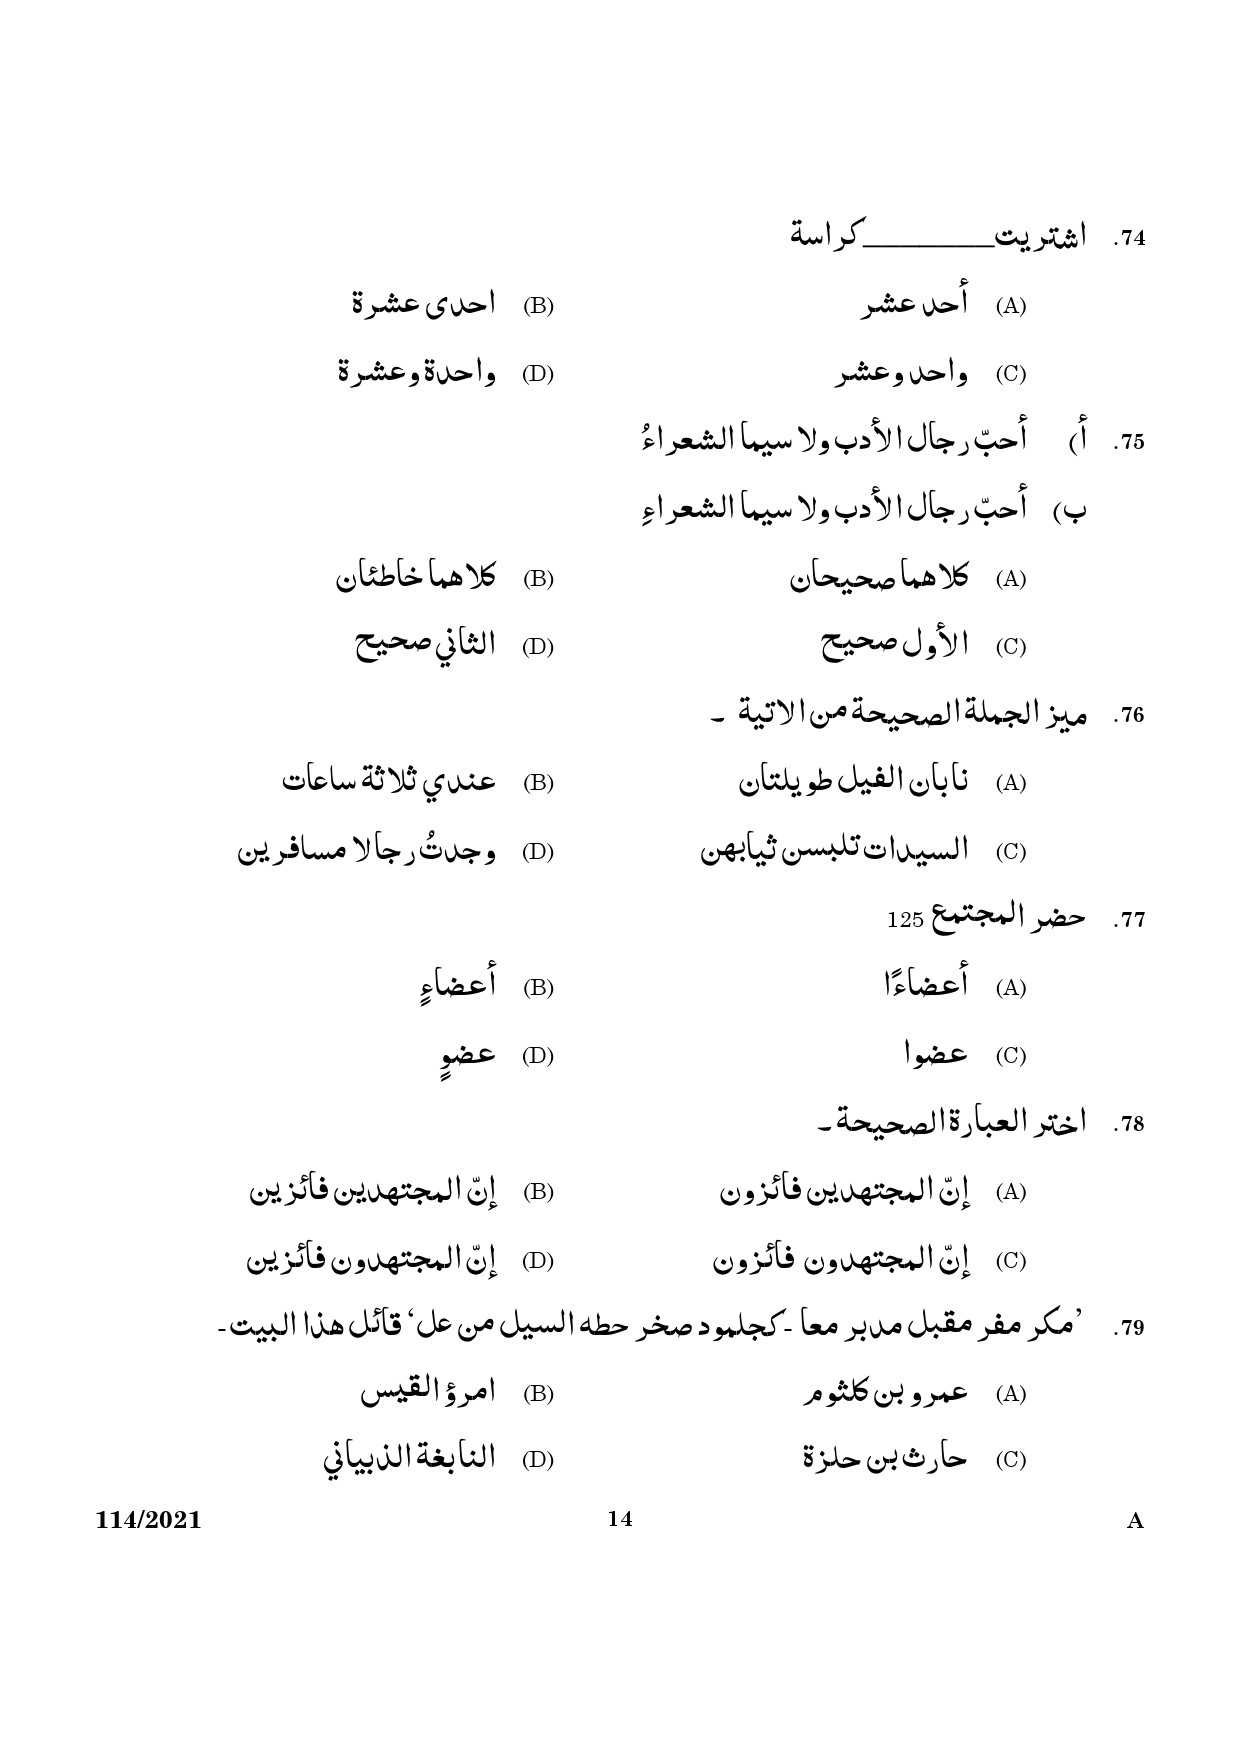 KPSC Full Time Junior Language Teacher Arabic Exam 2021 Code 1142021 12